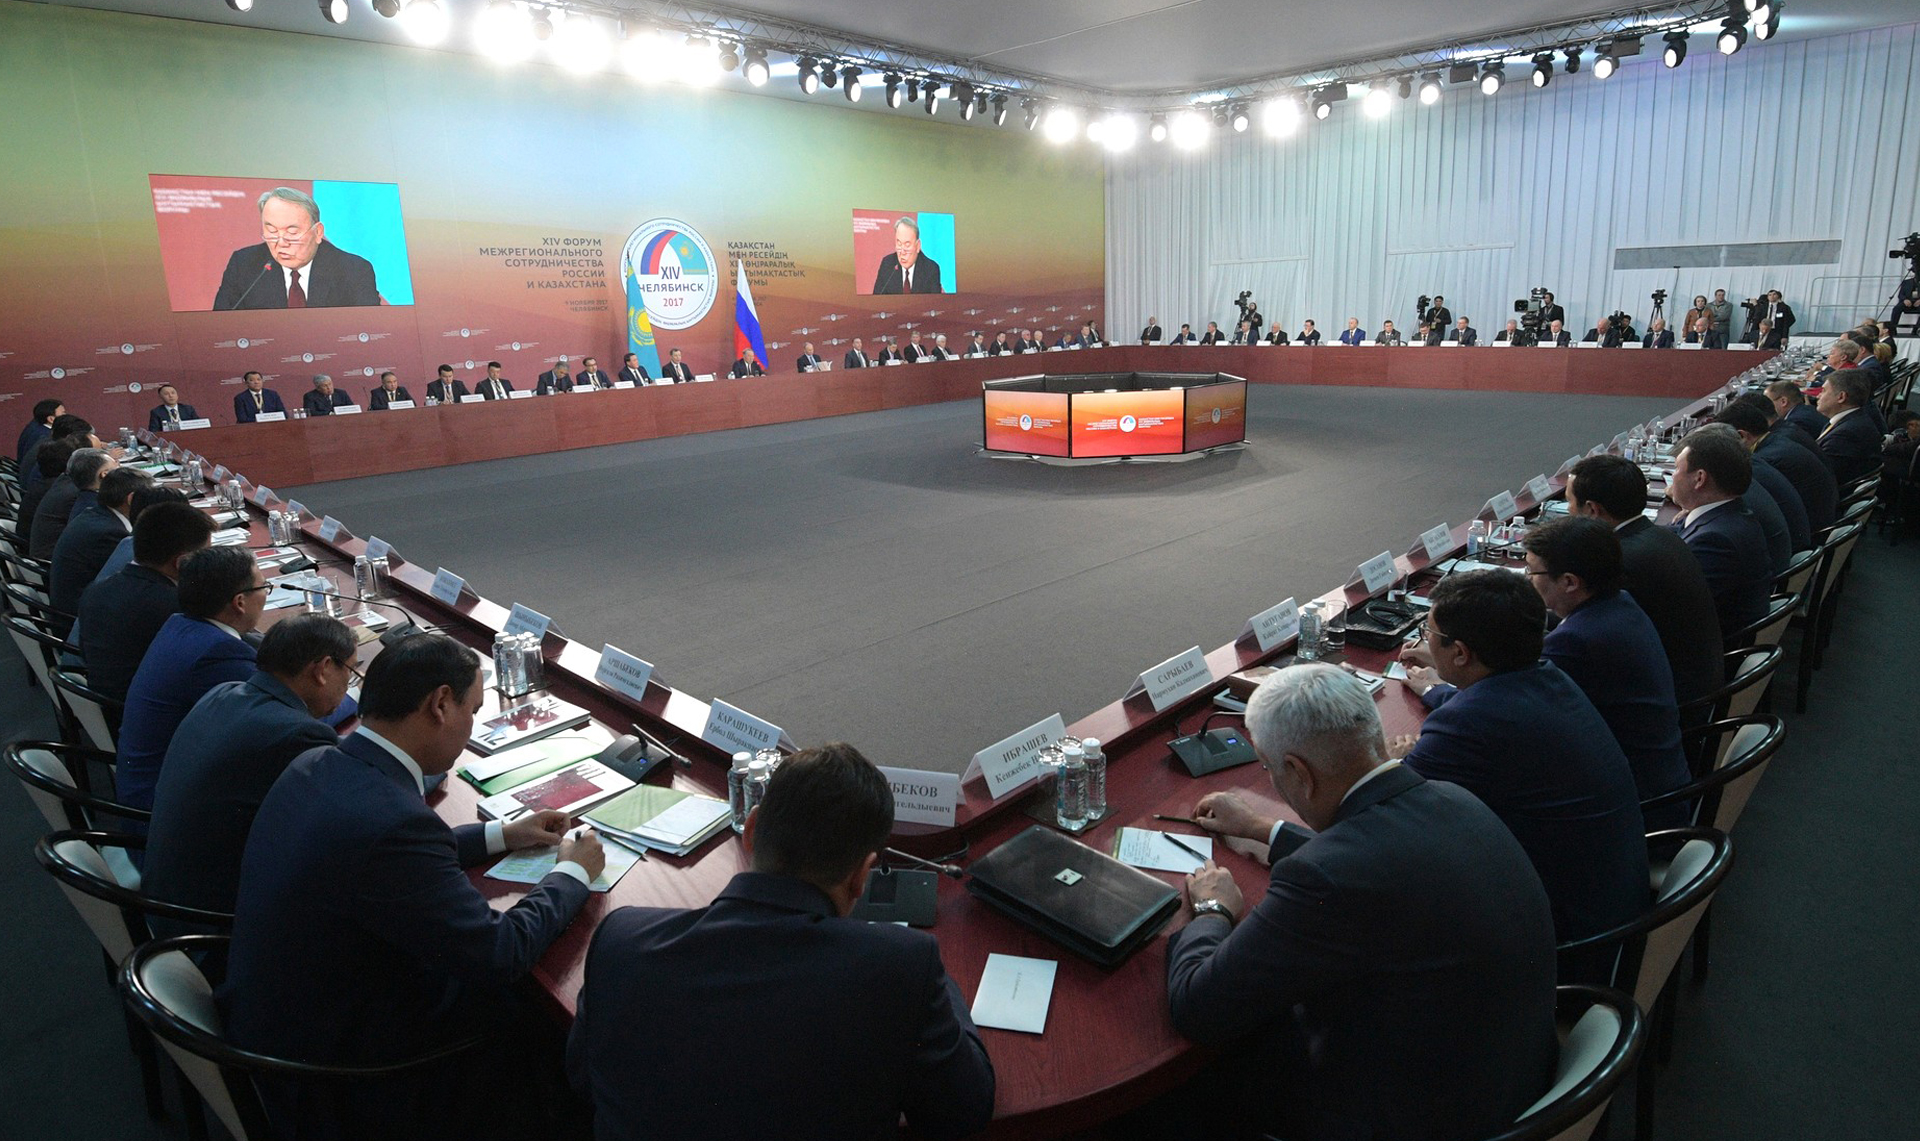 Форум проходил в Челябинске в 2017 году. В нем принимал участие президент России Владимир Путин